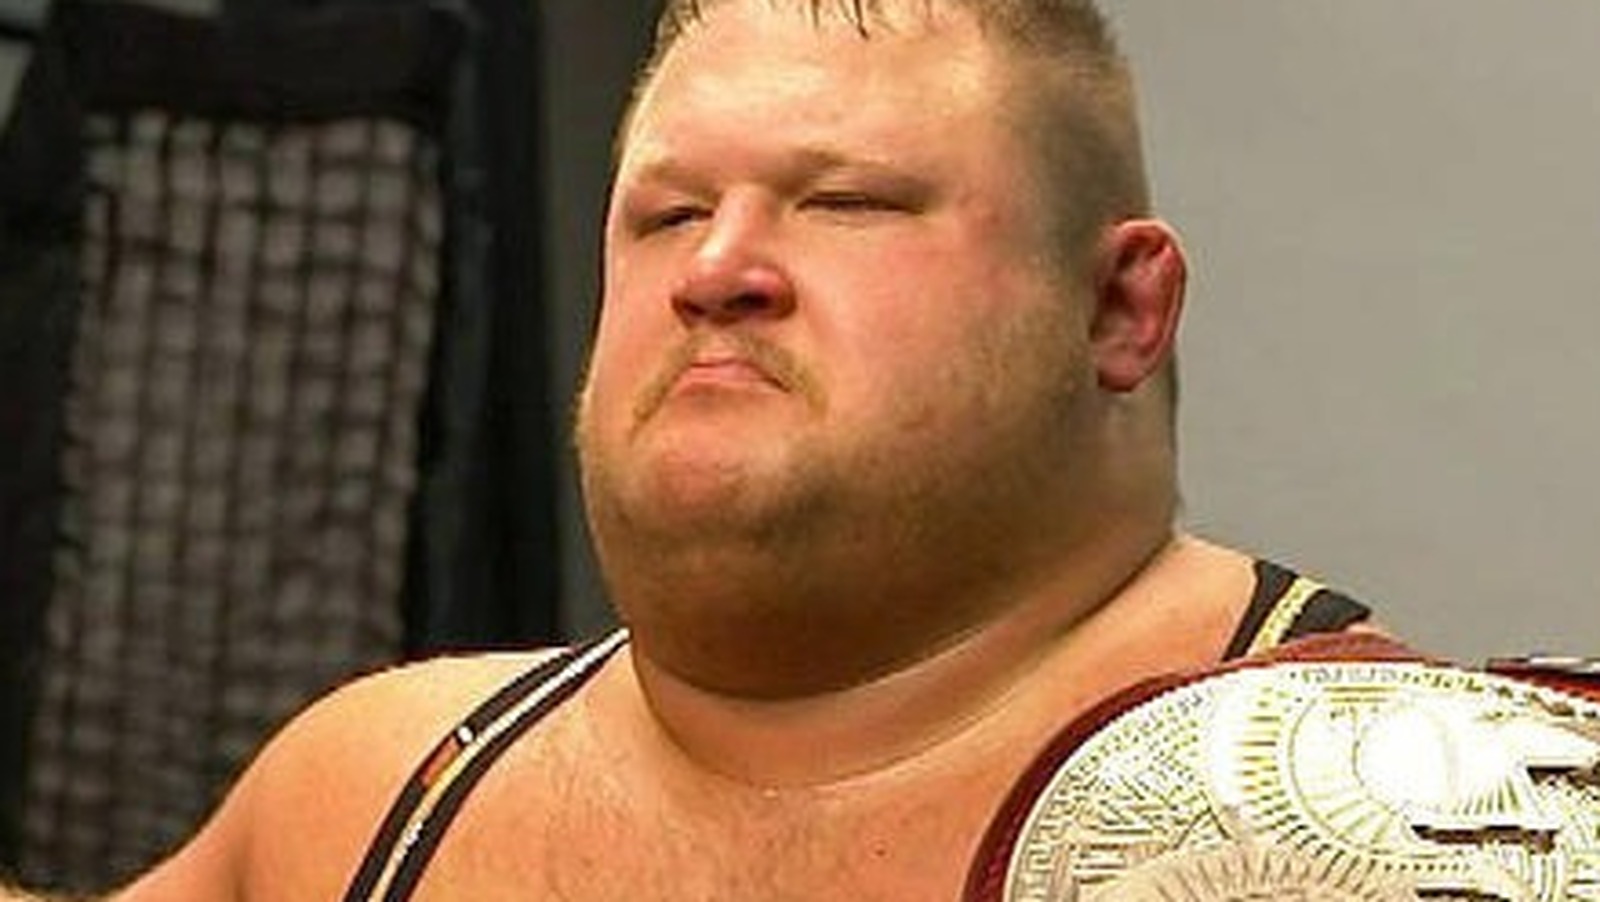 Otis lanza desafío a 'Studs' de WWE NXT